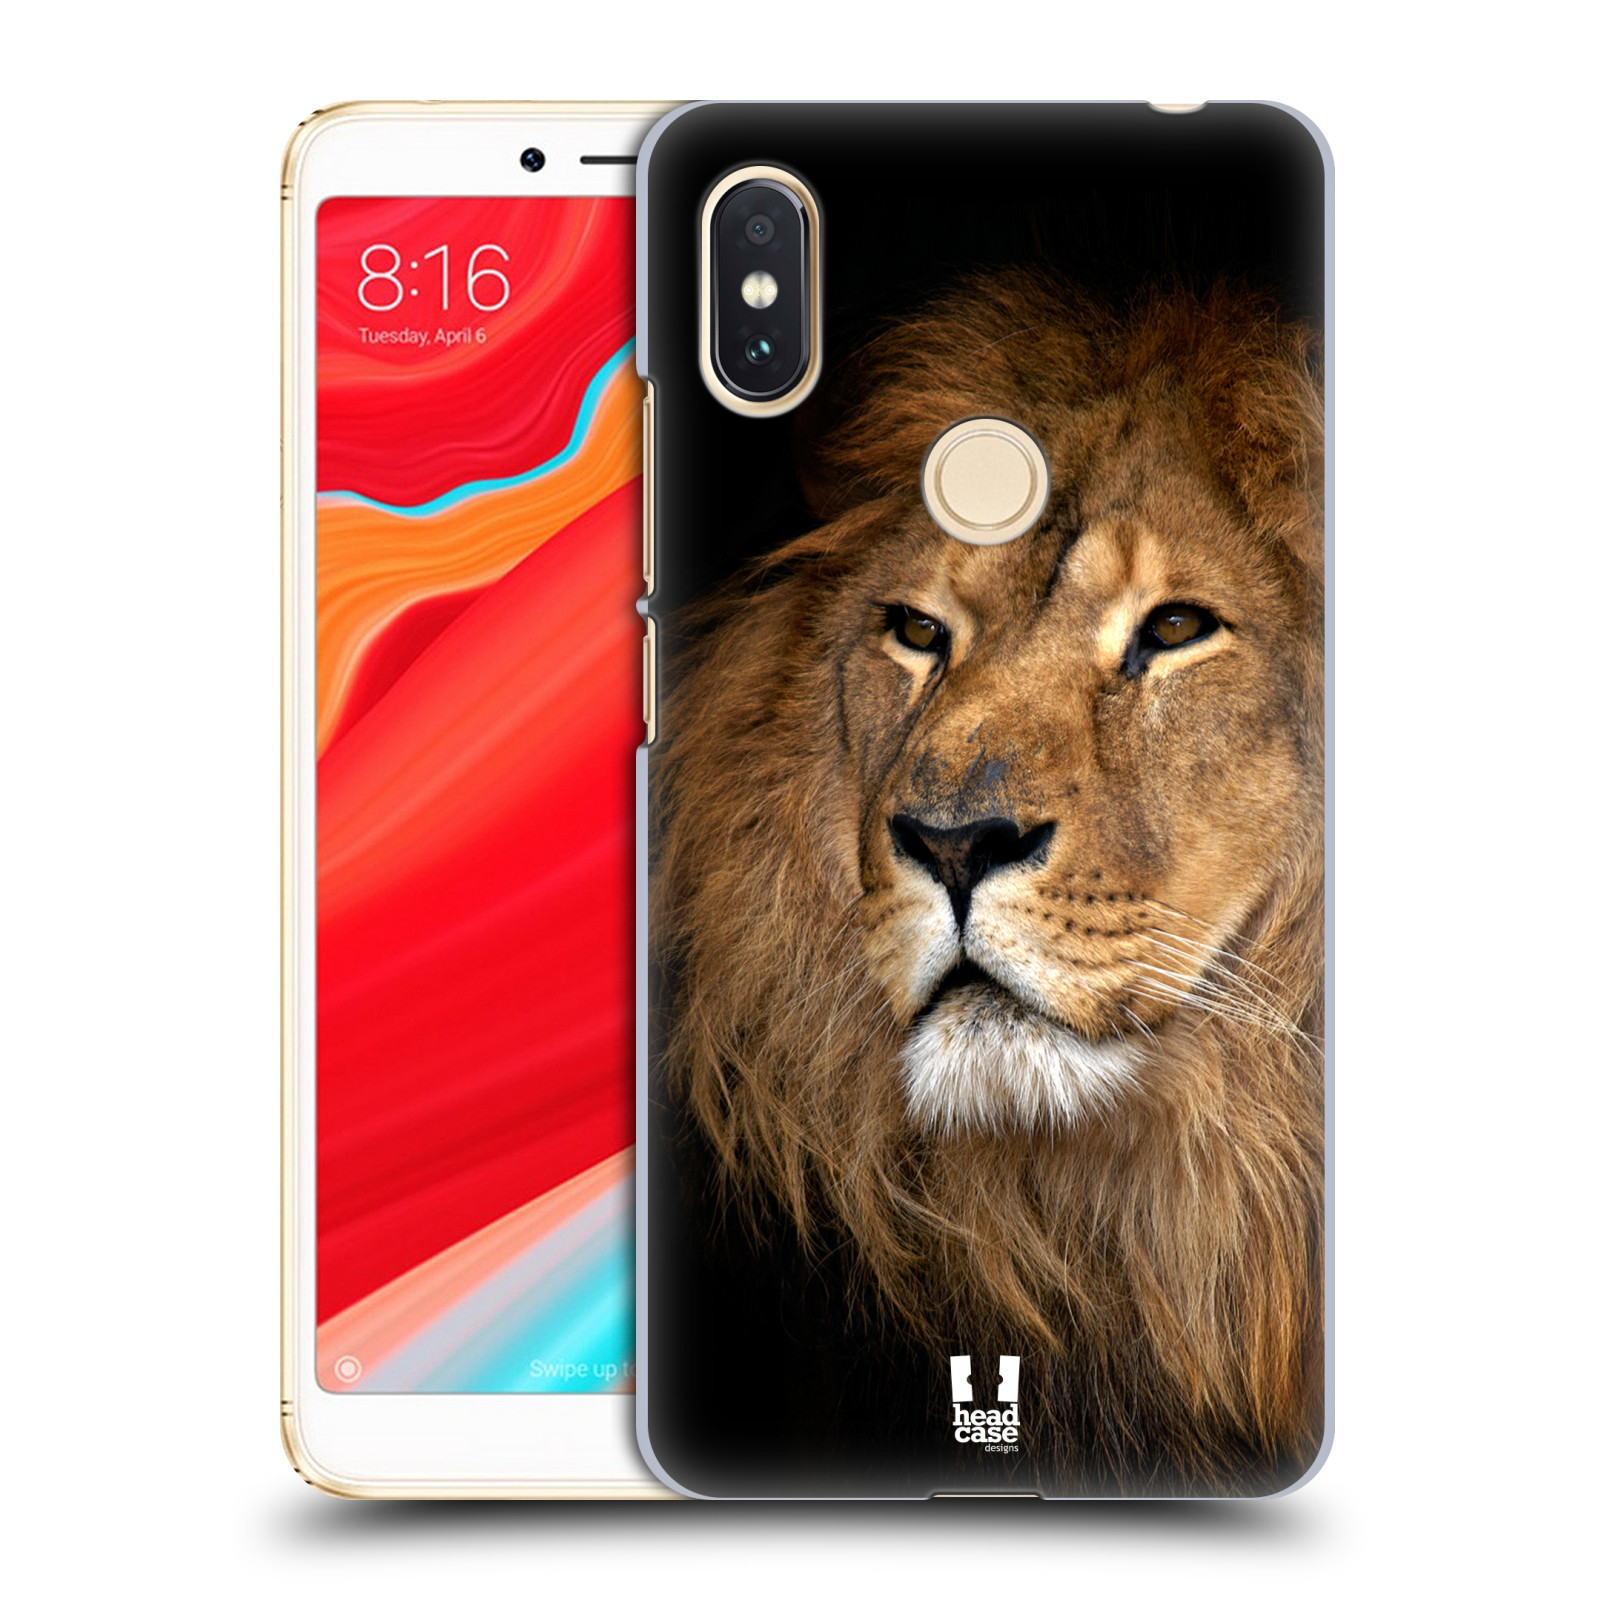 HEAD CASE plastový obal na mobil Xiaomi Redmi S2 vzor Divočina, Divoký život a zvířata foto LEV KRÁL ZVÍŘAT